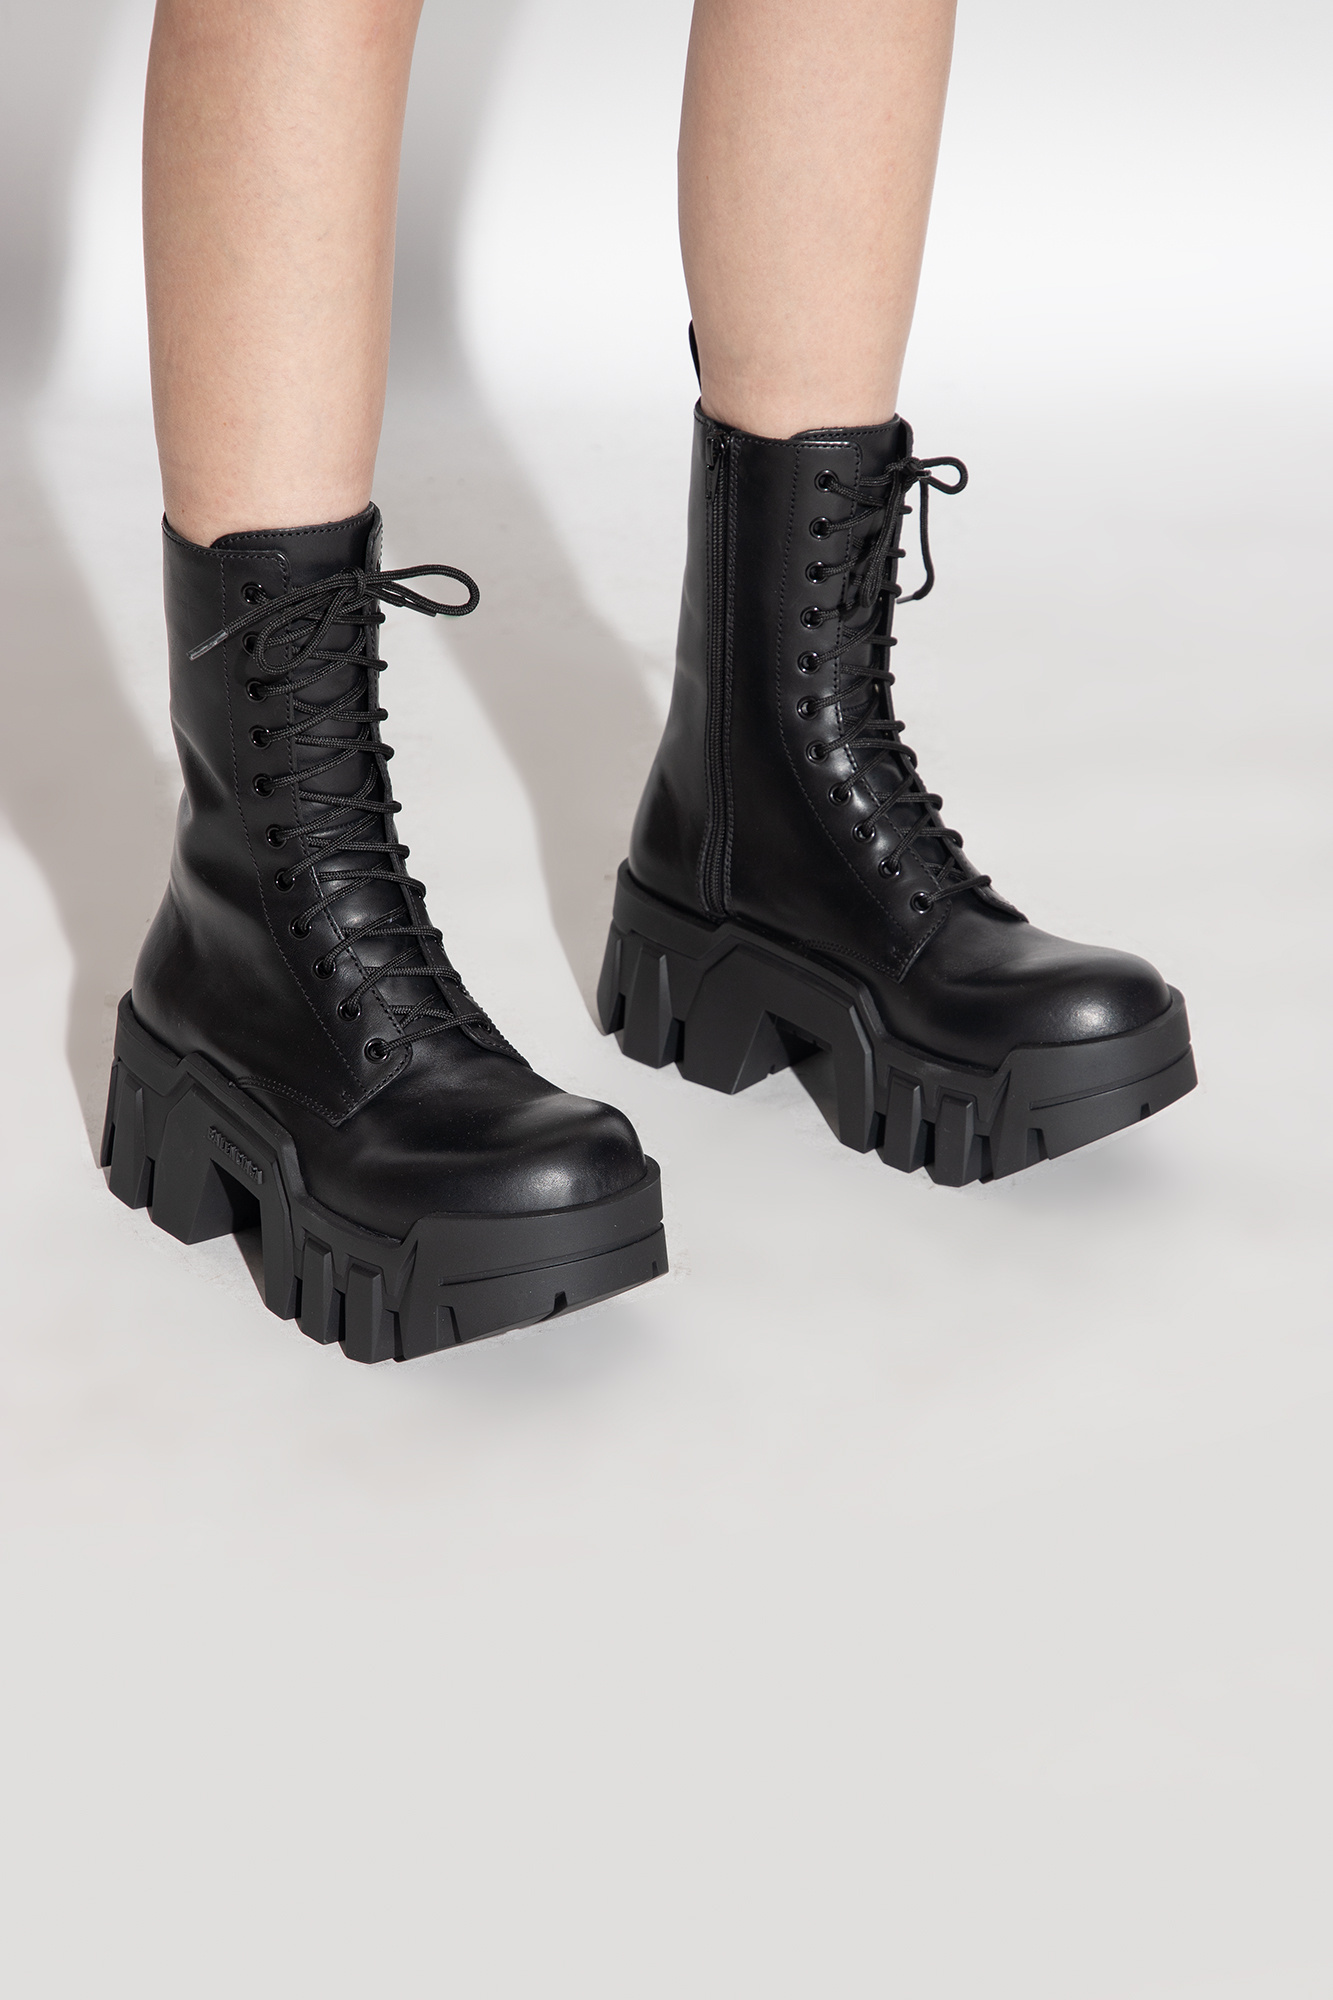 Black 'Bulldozer' ankle boots Balenciaga - Vitkac Canada